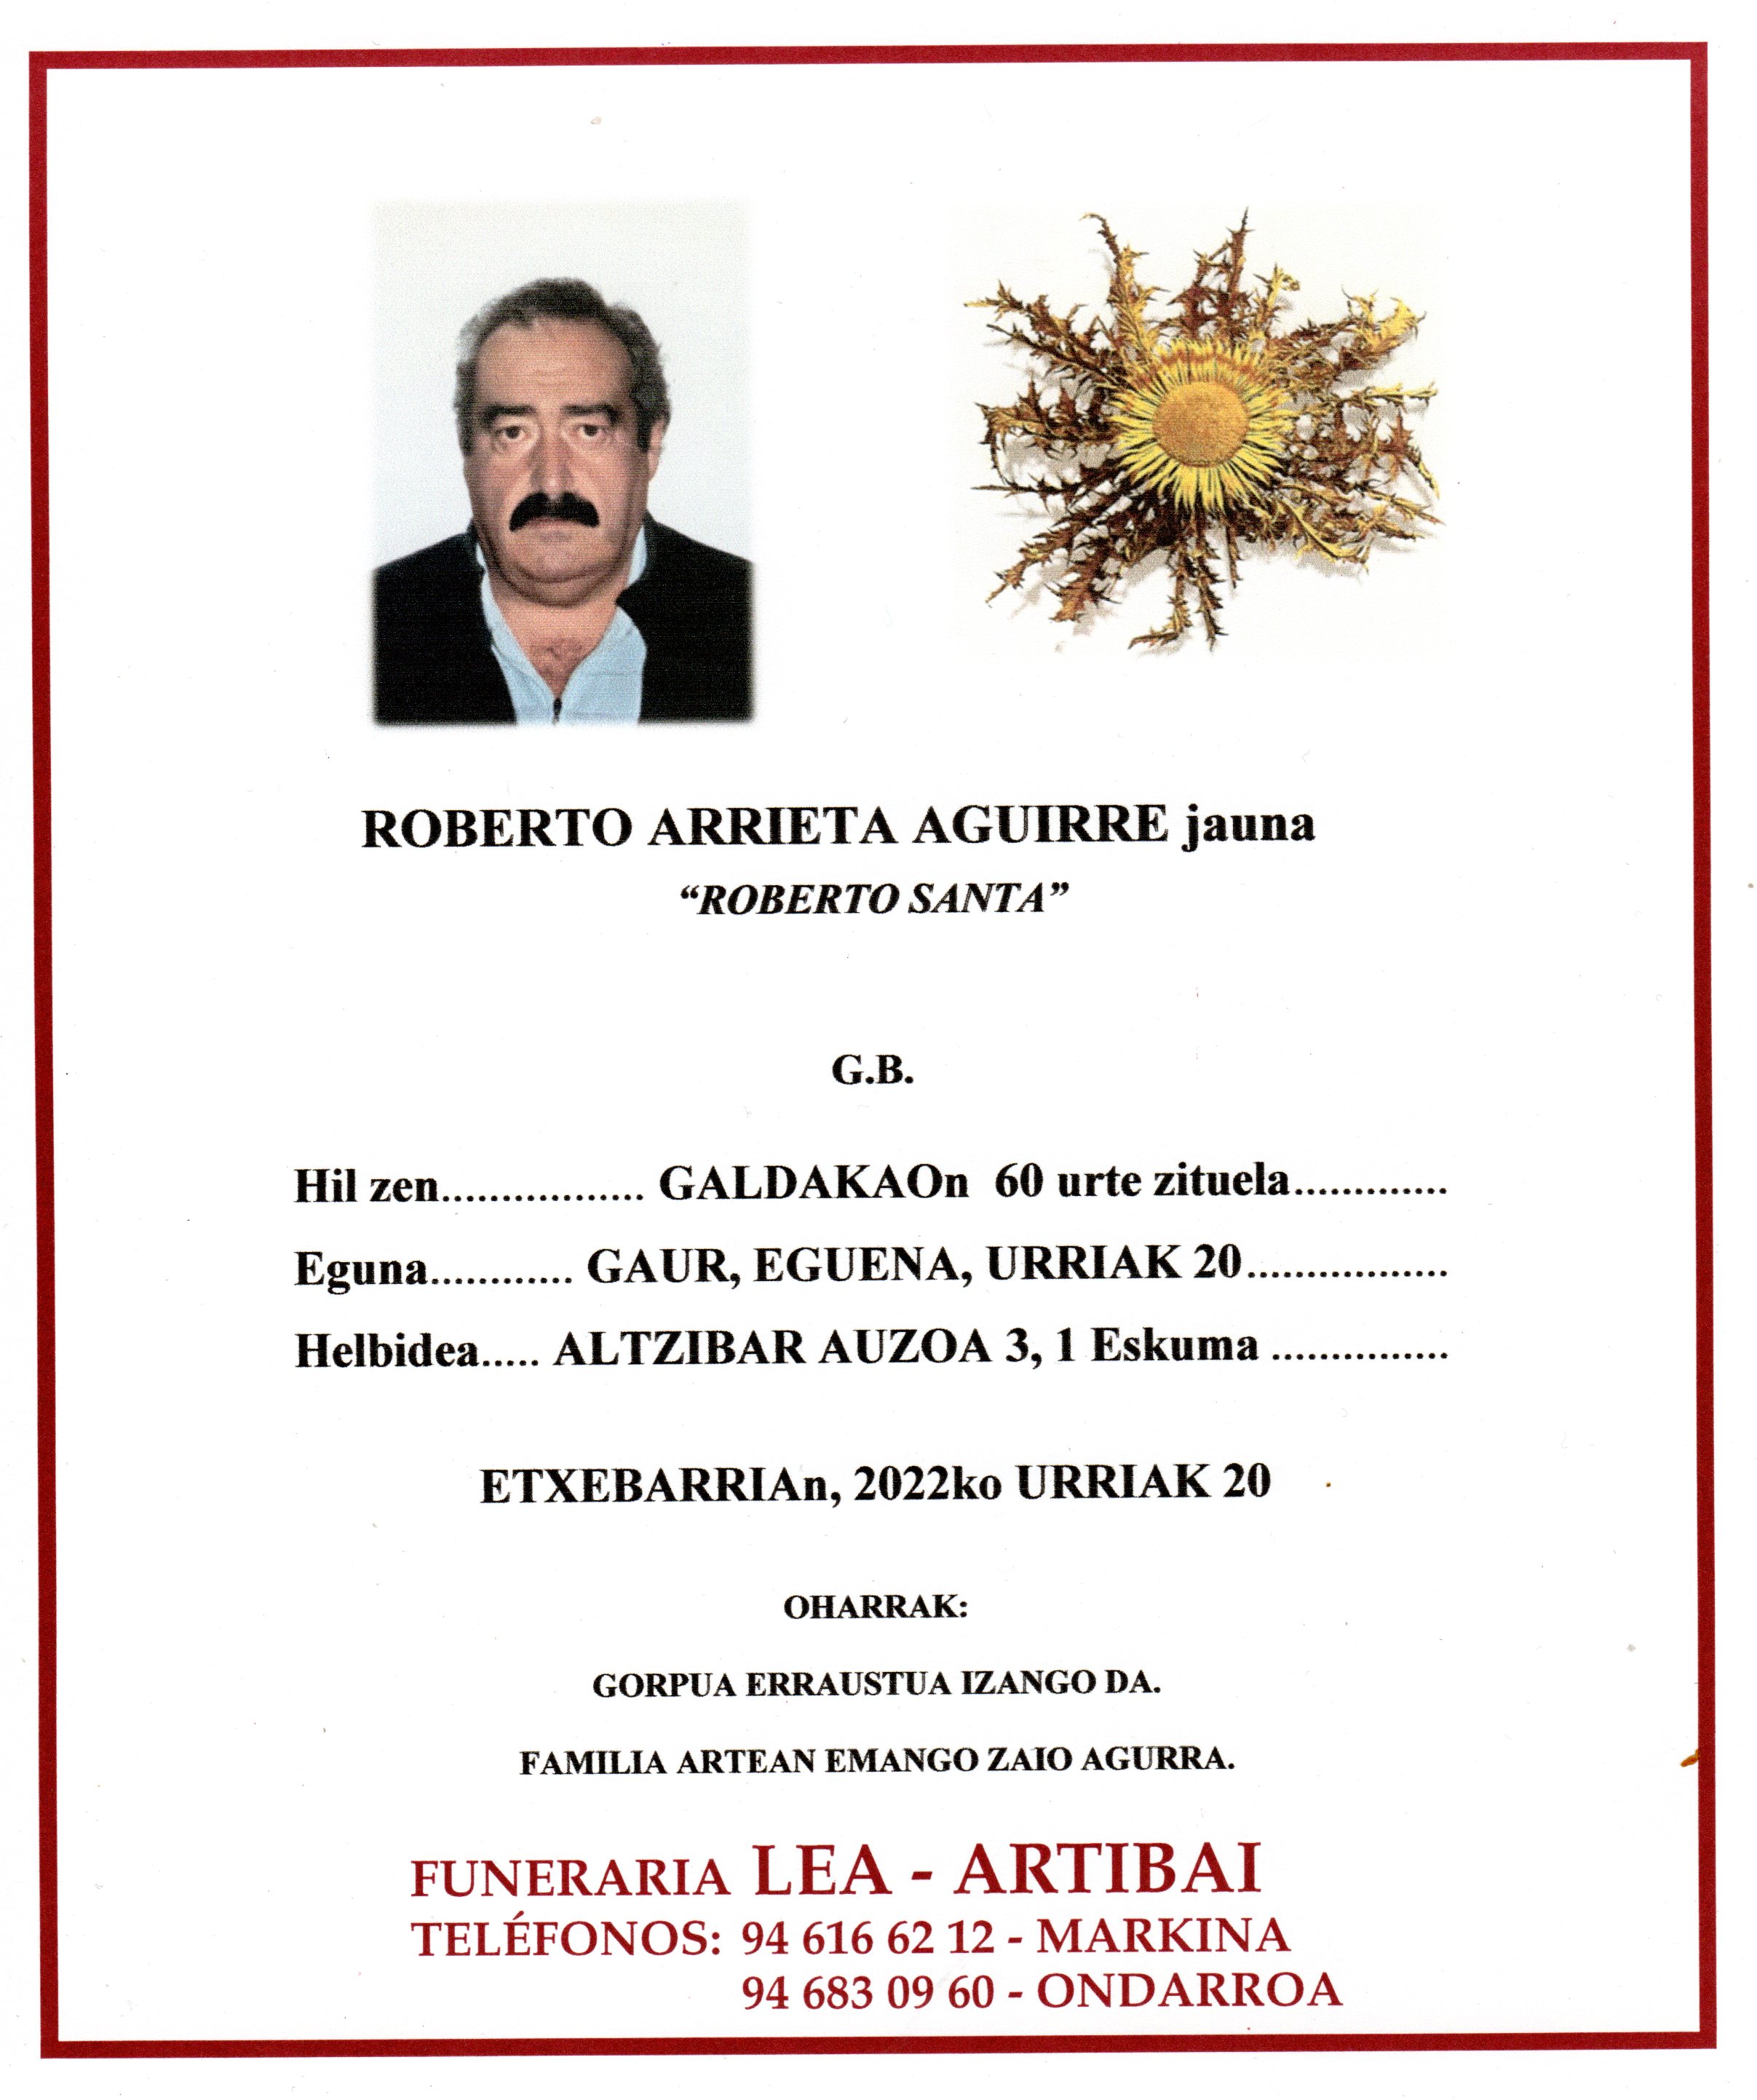 Roberto Arrieta Aguirre